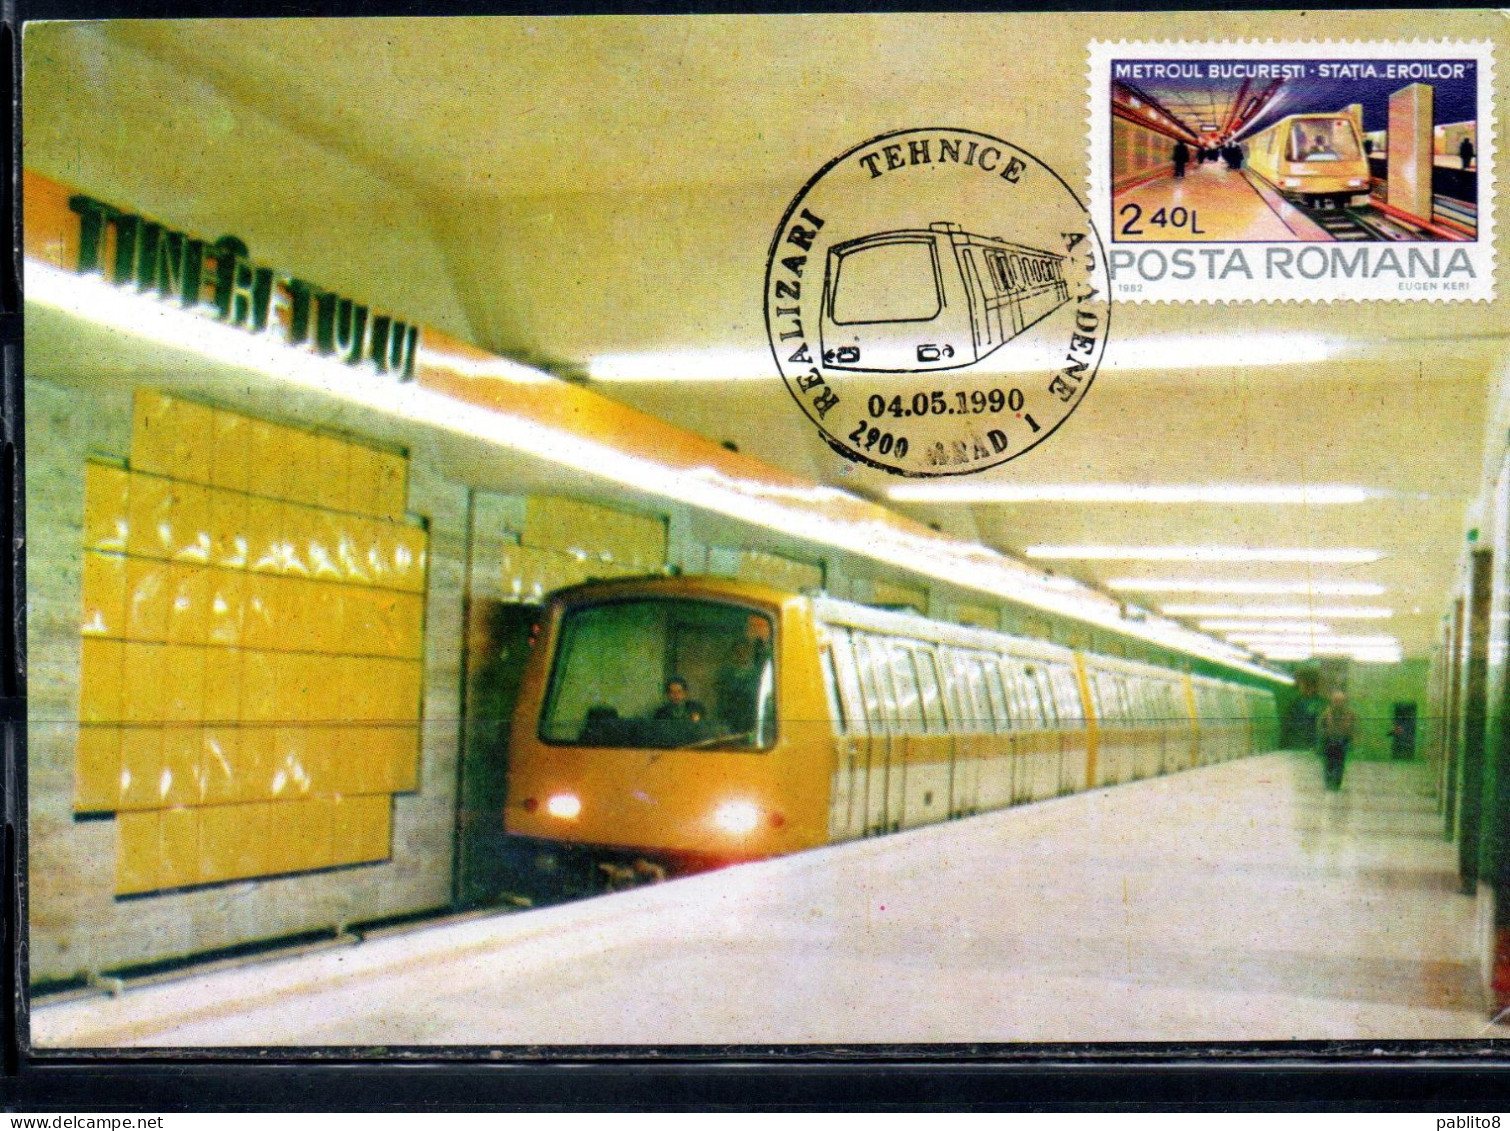 ROMANIA 1982 SUBWAY METROUL BUCARESTI METROPOLITANA 2.40L MAXI MAXIMUM CARD - Maximumkaarten